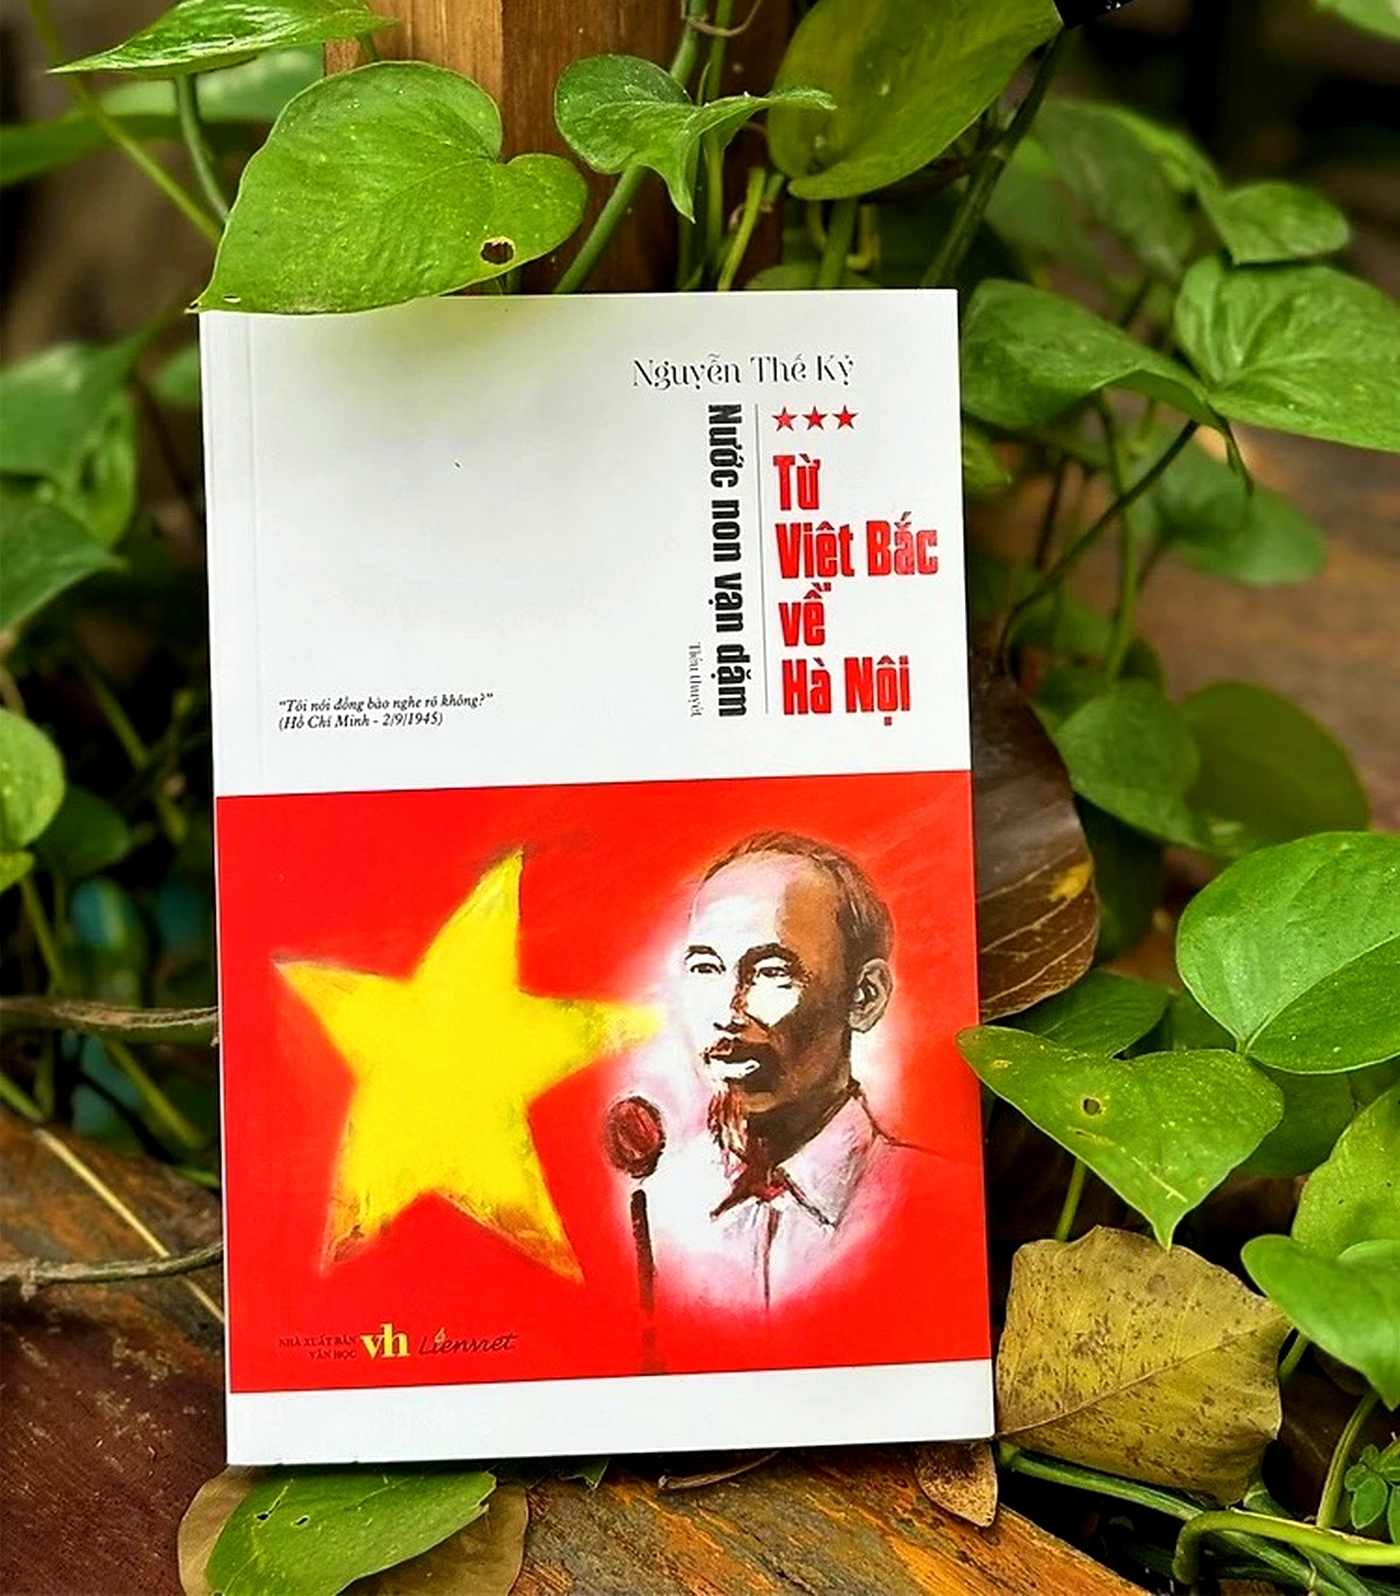 Tiểu thuyết “Từ Việt Bắc về Hà Nội” của nhà văn Nguyễn Thế Kỷ.